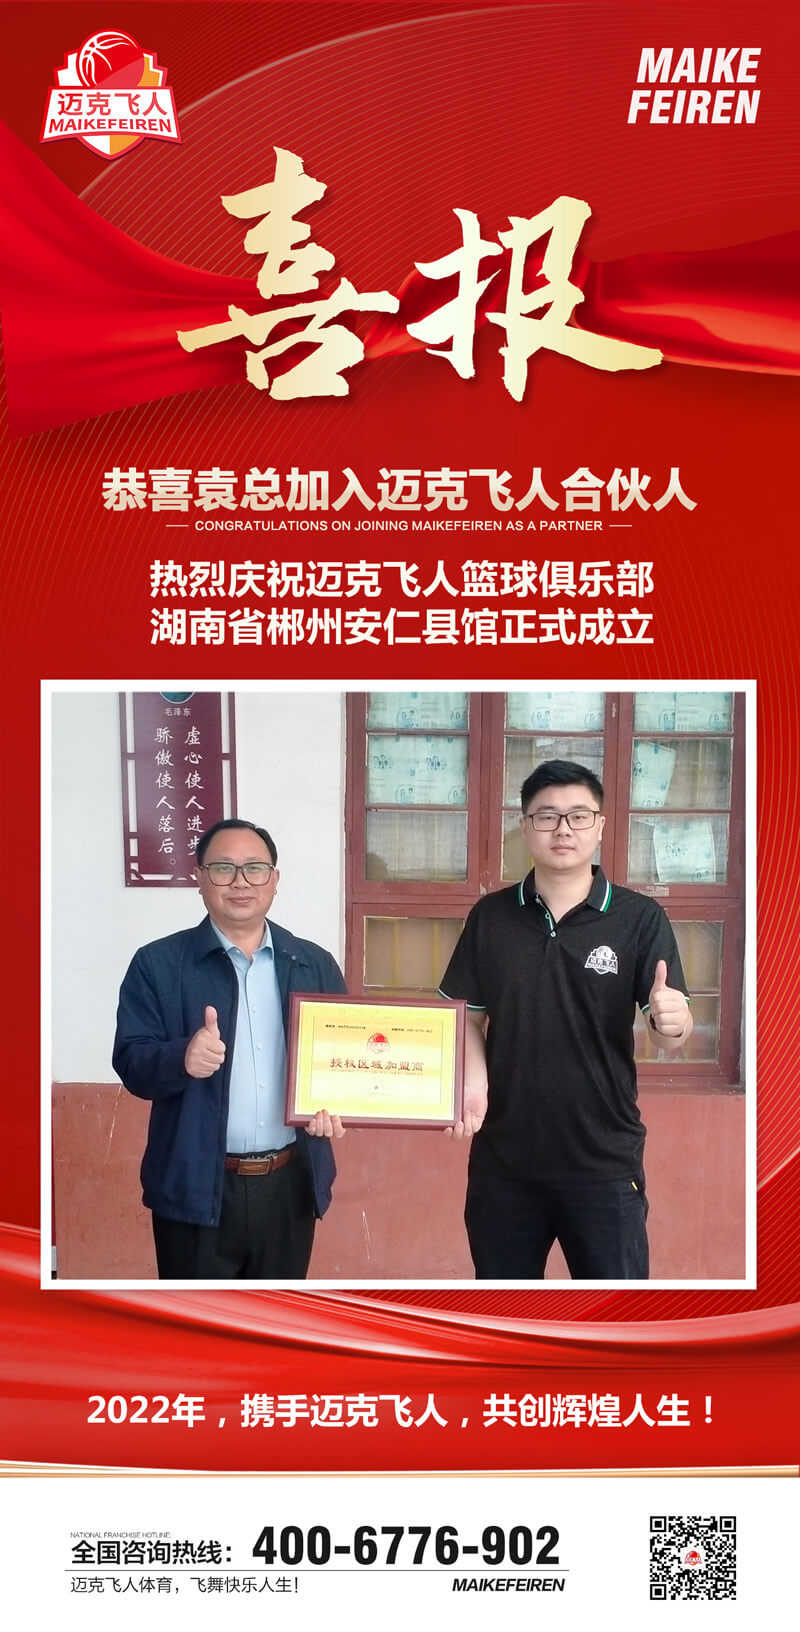 篮球加盟喜报：迈克飞人篮球俱乐部郴州安仁县馆正式成立